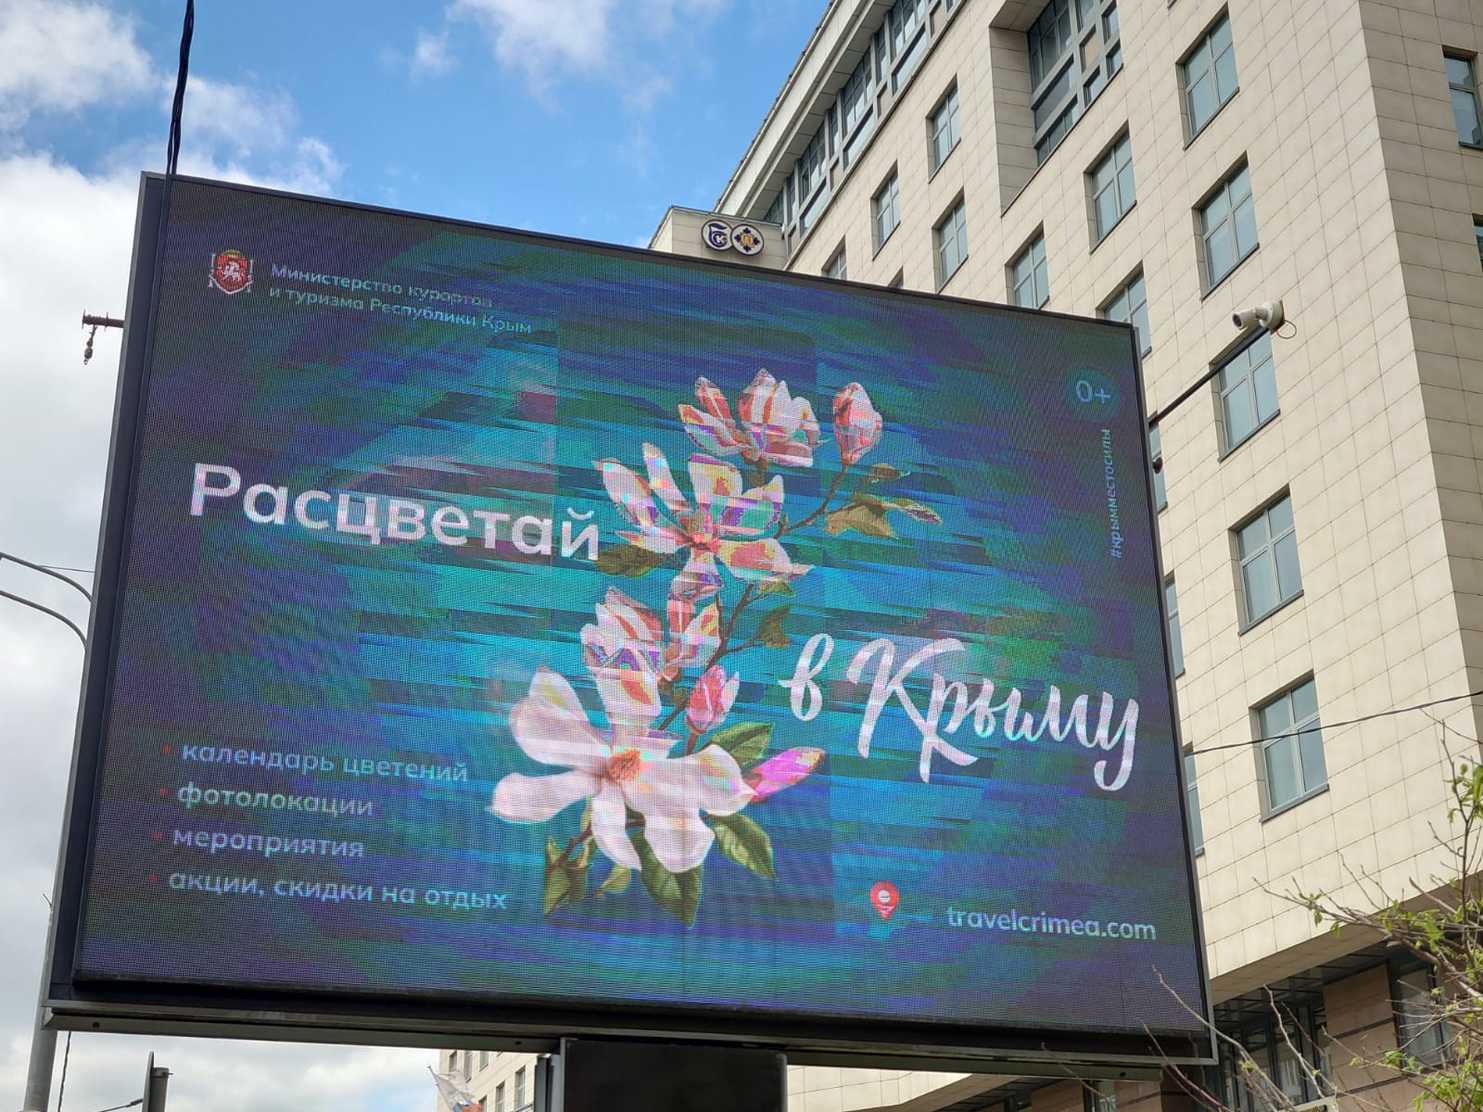 Кампания Расцветай в Крыму! стартовала в Москве